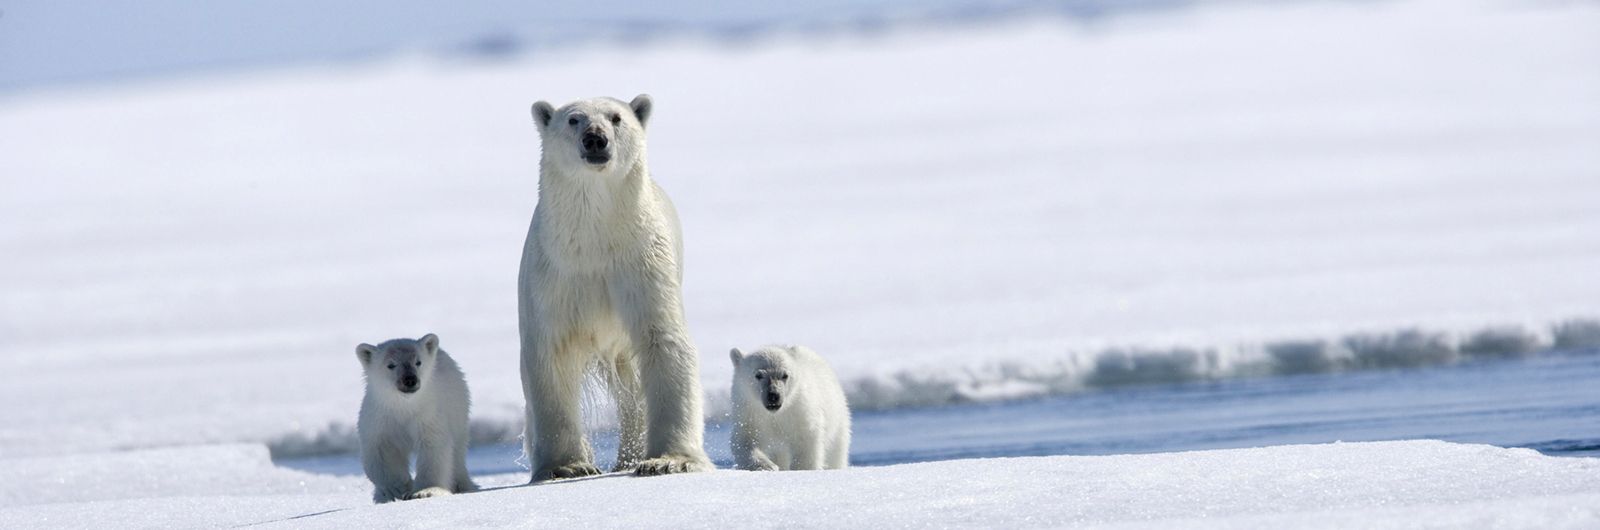 Osa polar y su cría en Groenlandia